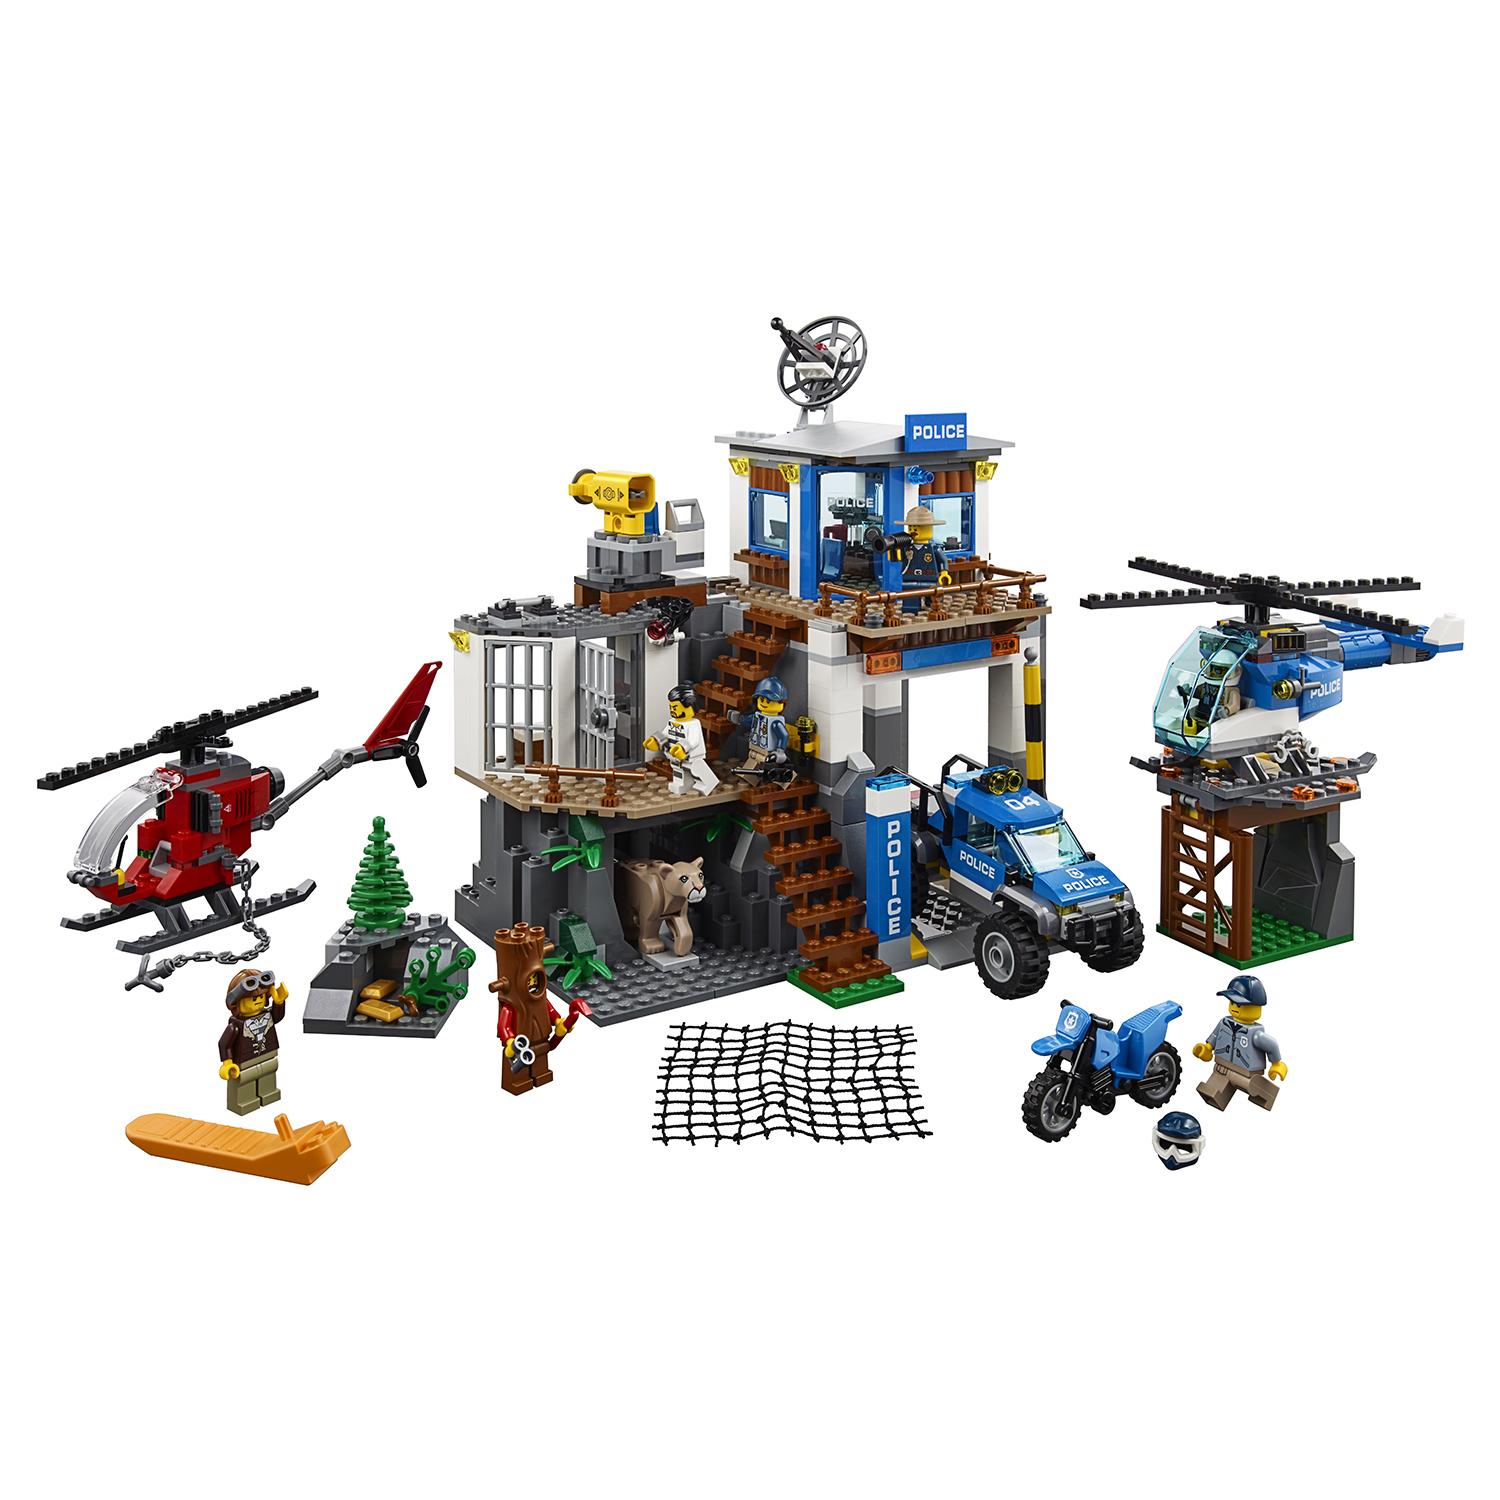 Lego City 60174 Полицейский участок в горах